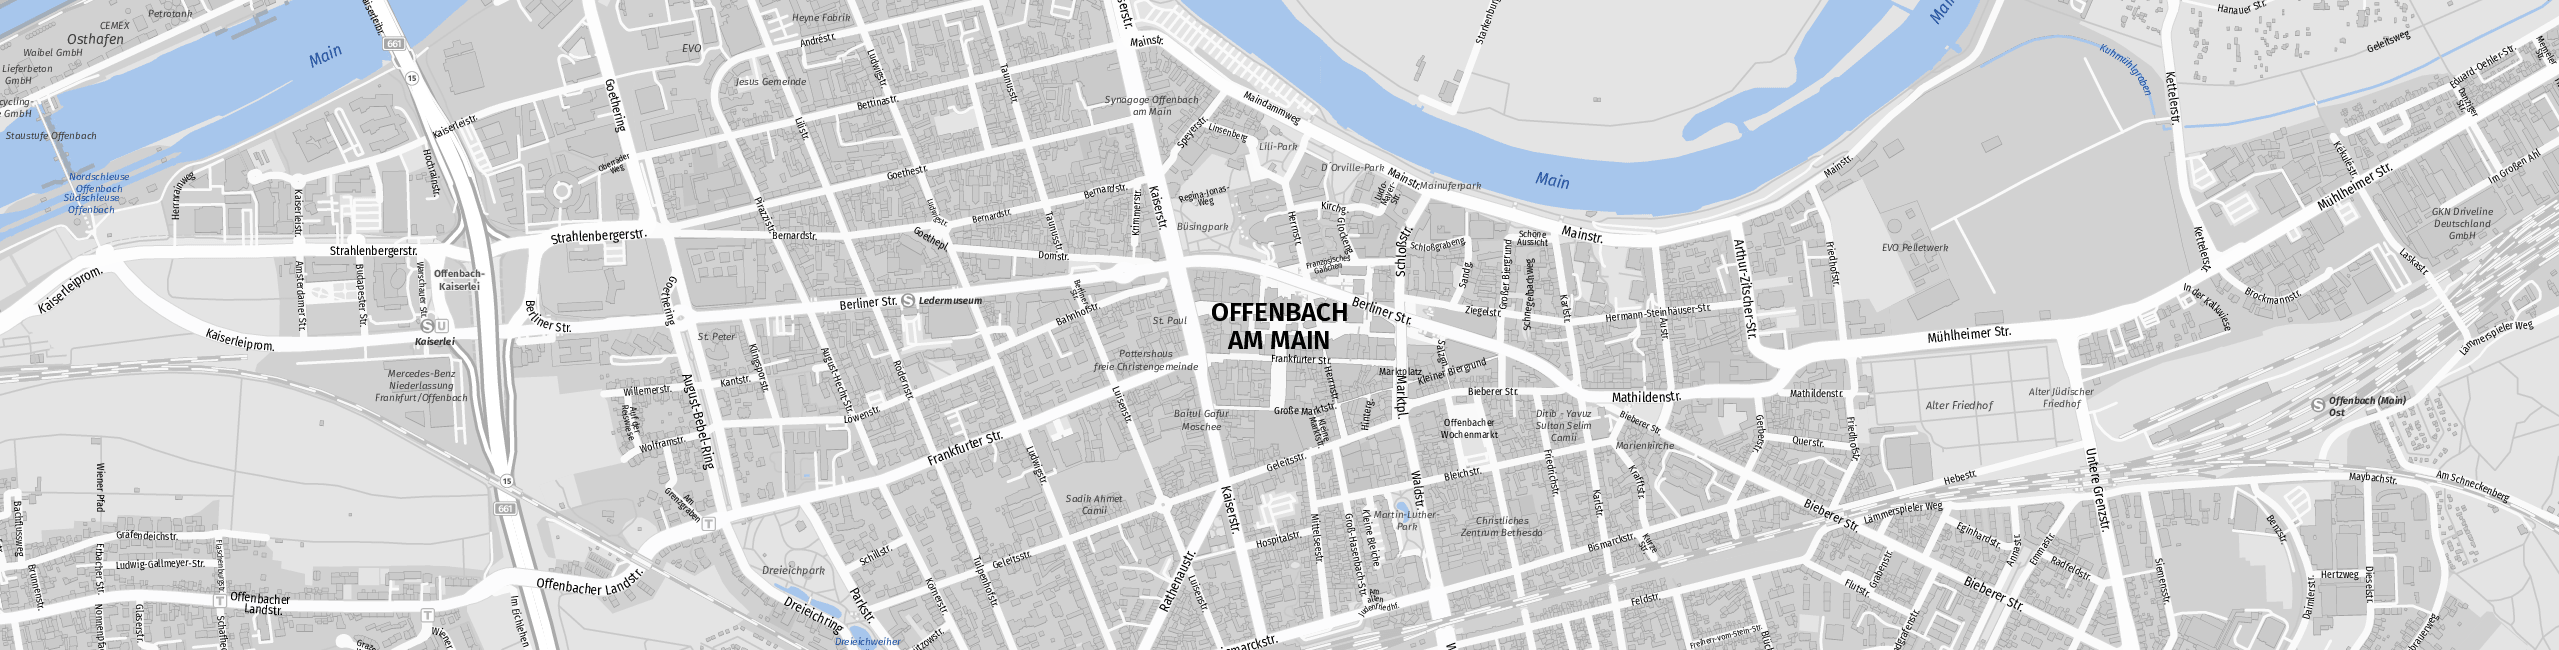 Stadtplan Offenbach am Main zum Downloaden.